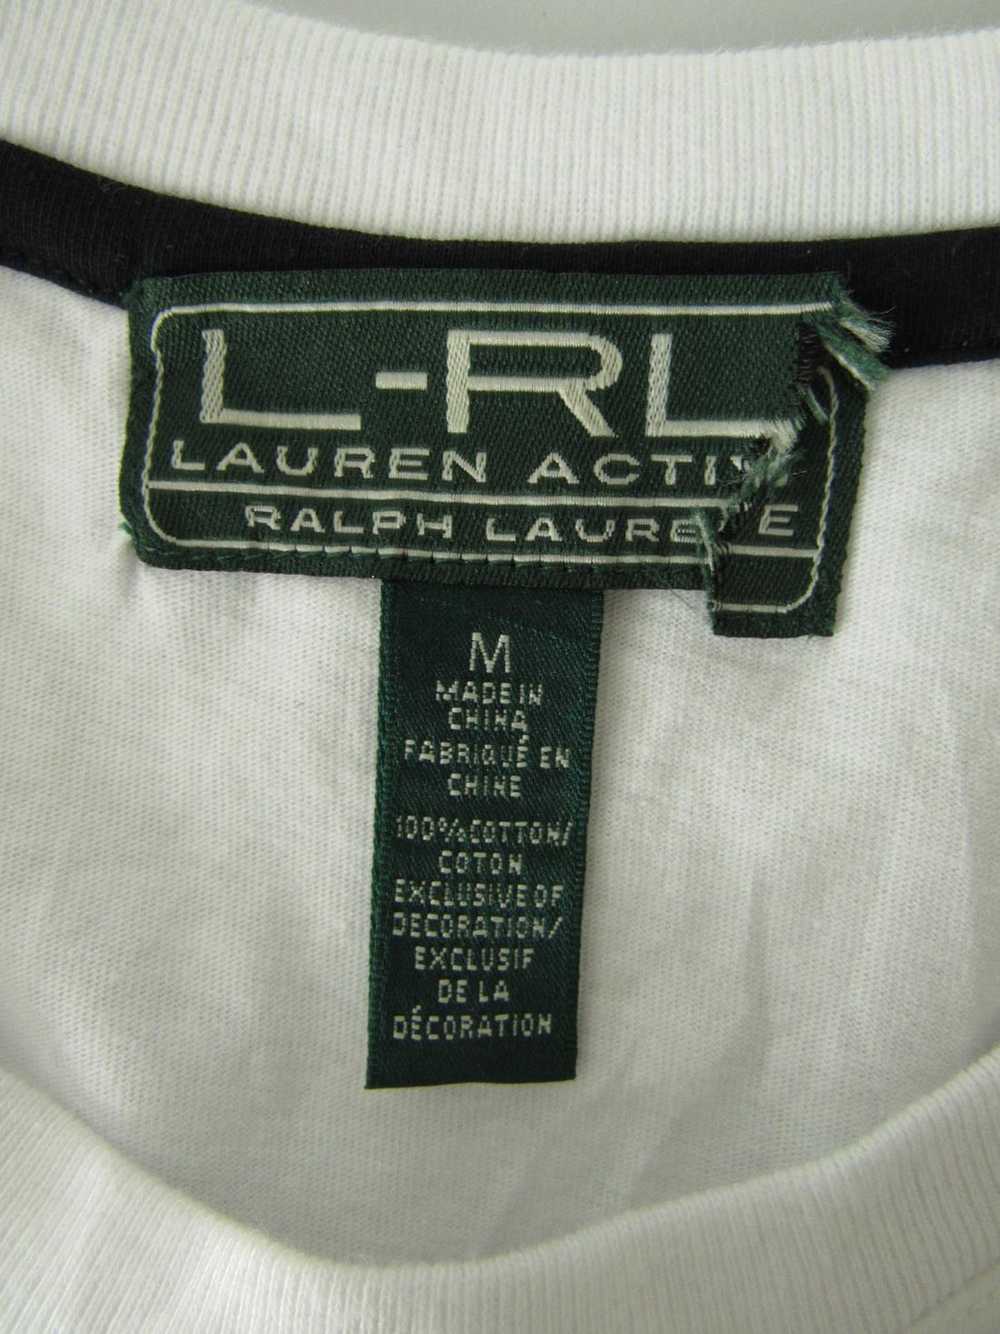 L-RL Lauren Active Ralph Lauren T-Shirt Top - image 3